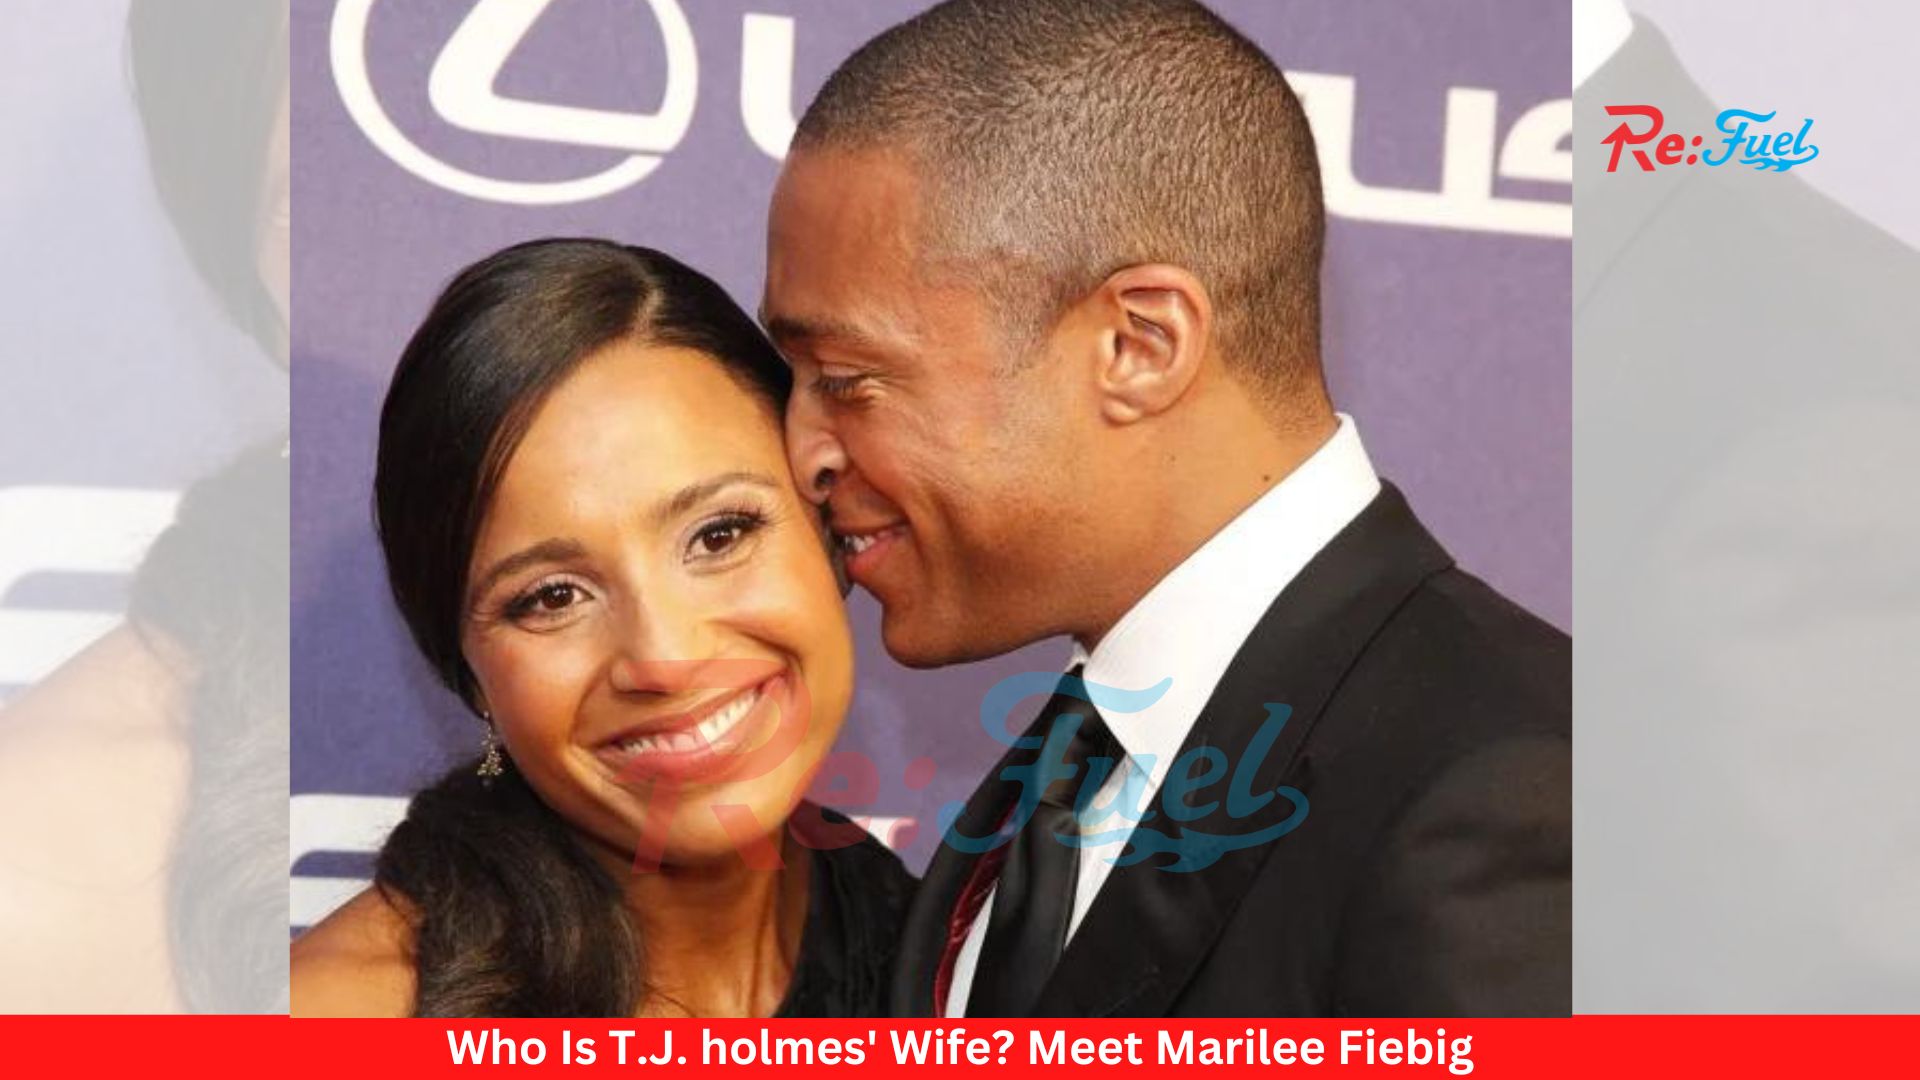 Who Is T.J. holmes' Wife? Meet Marilee Fiebig